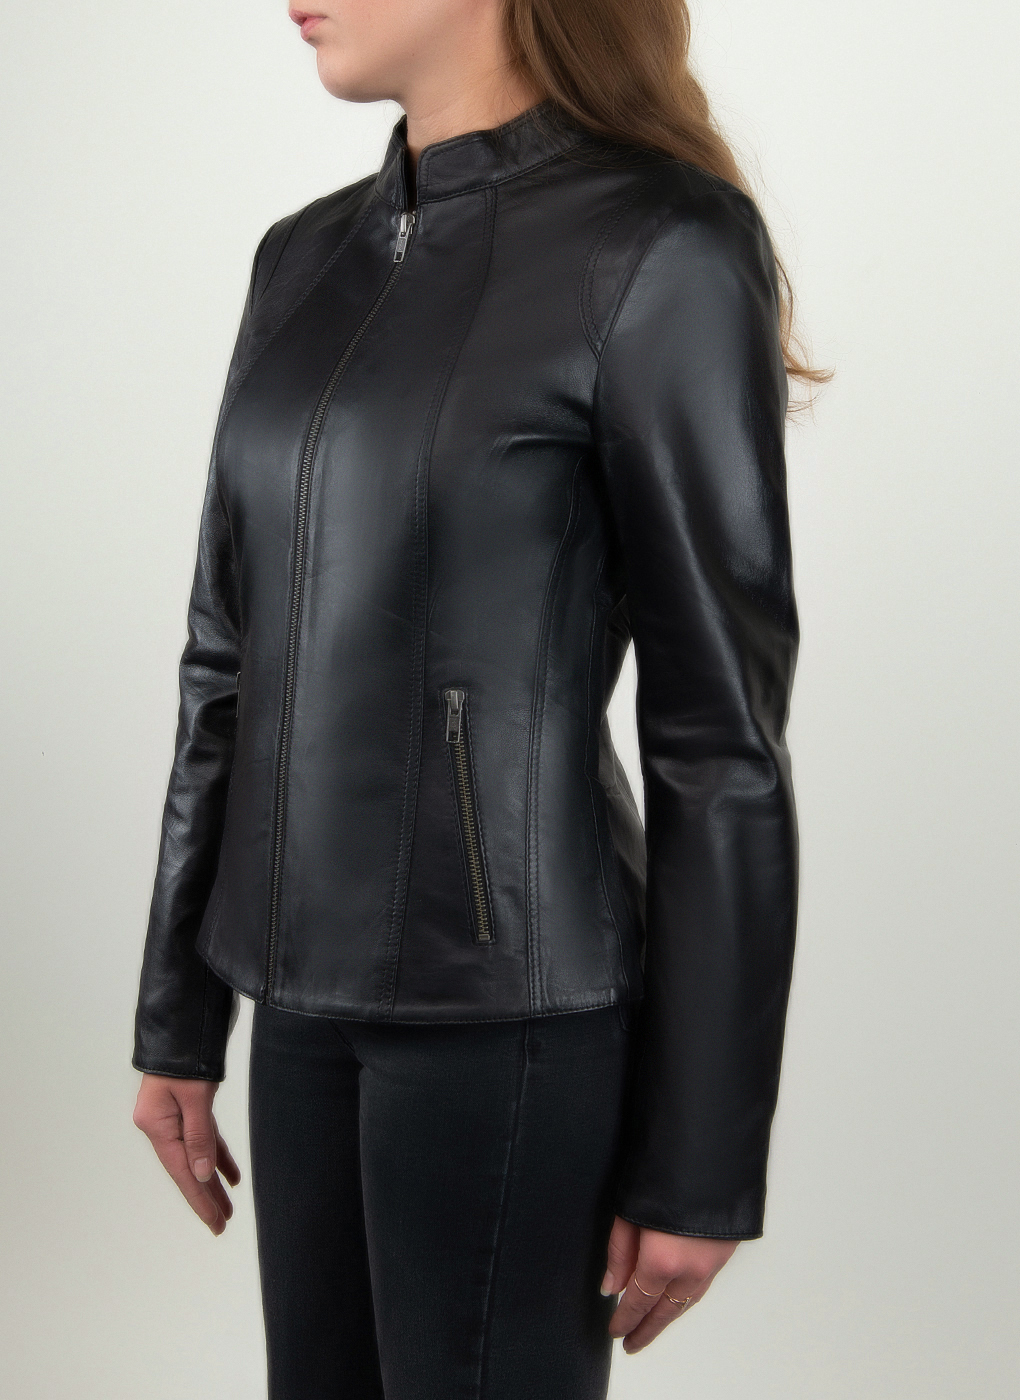 Кожаная куртка женская Каляев 1624708 черная 48 RU